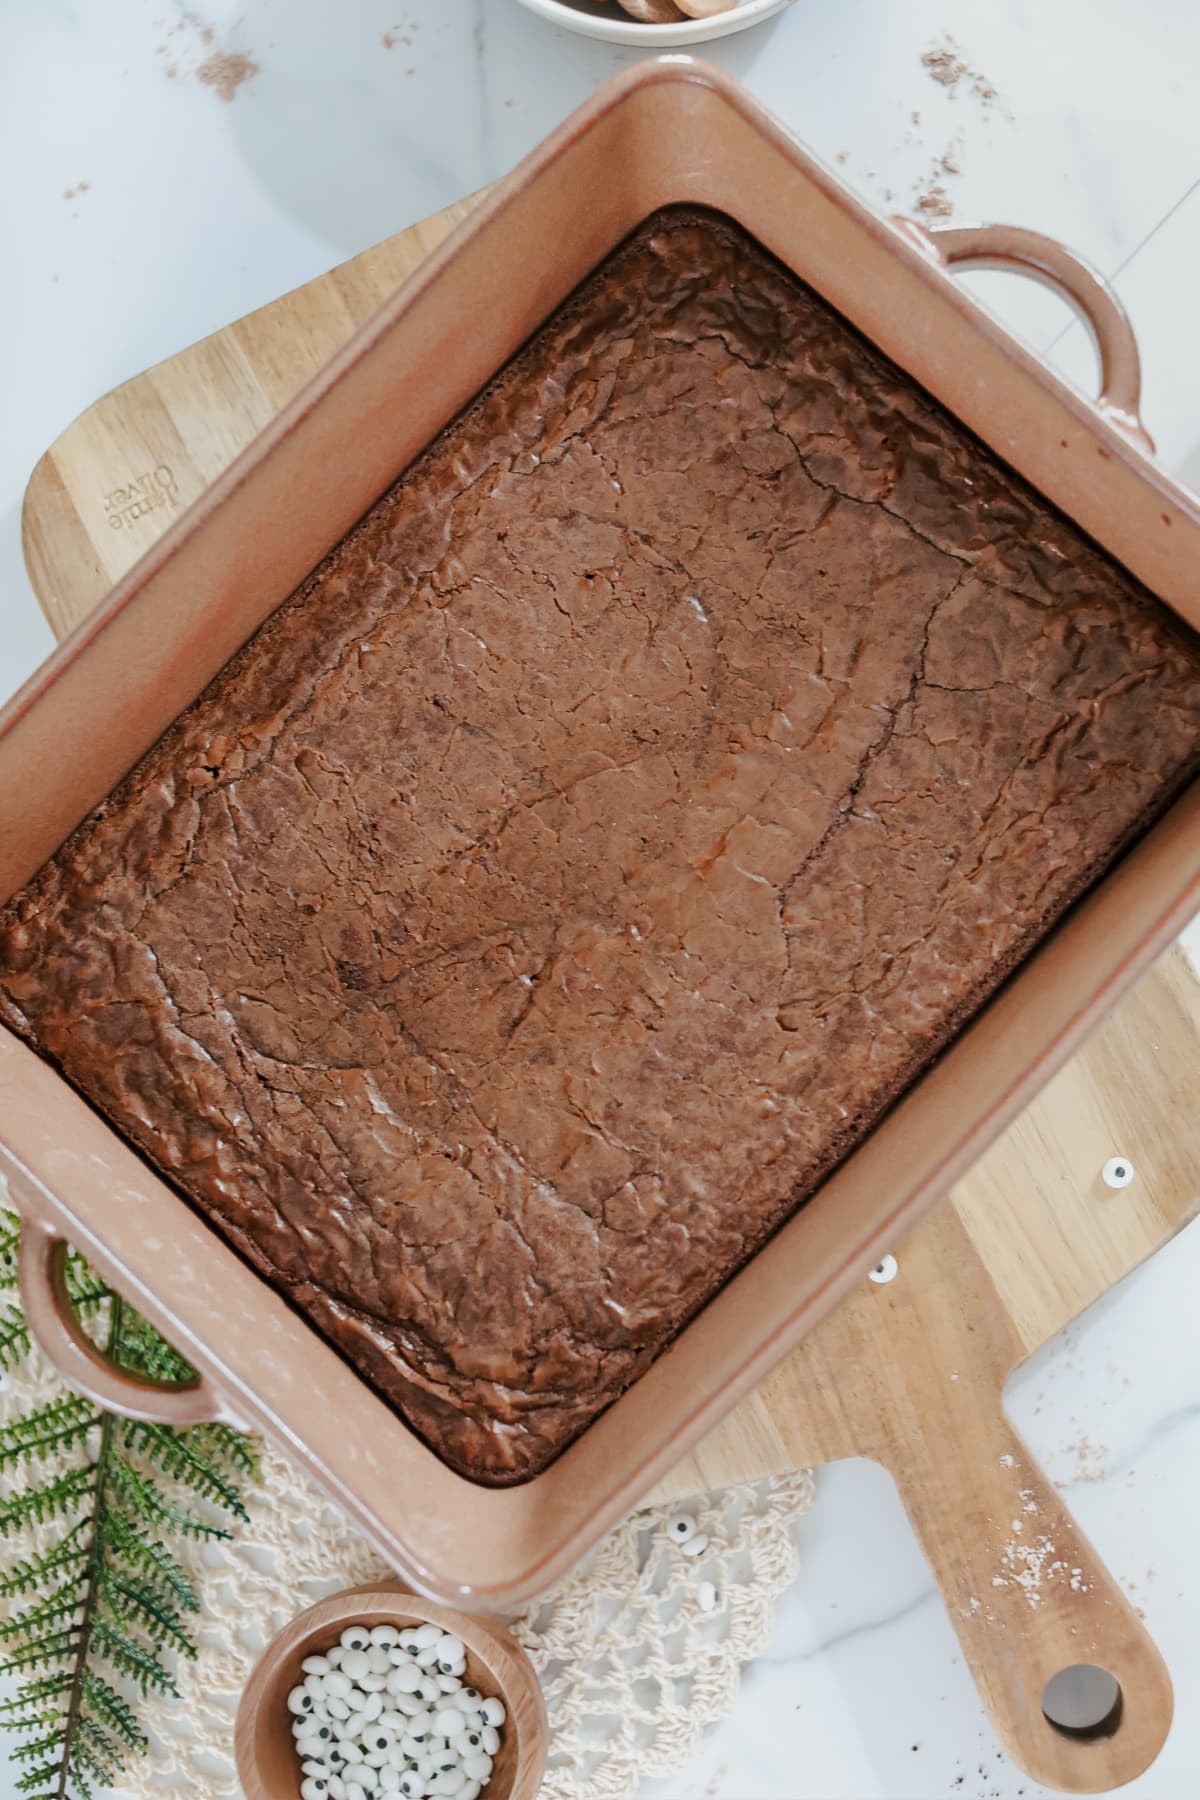 Baked brownies in pan